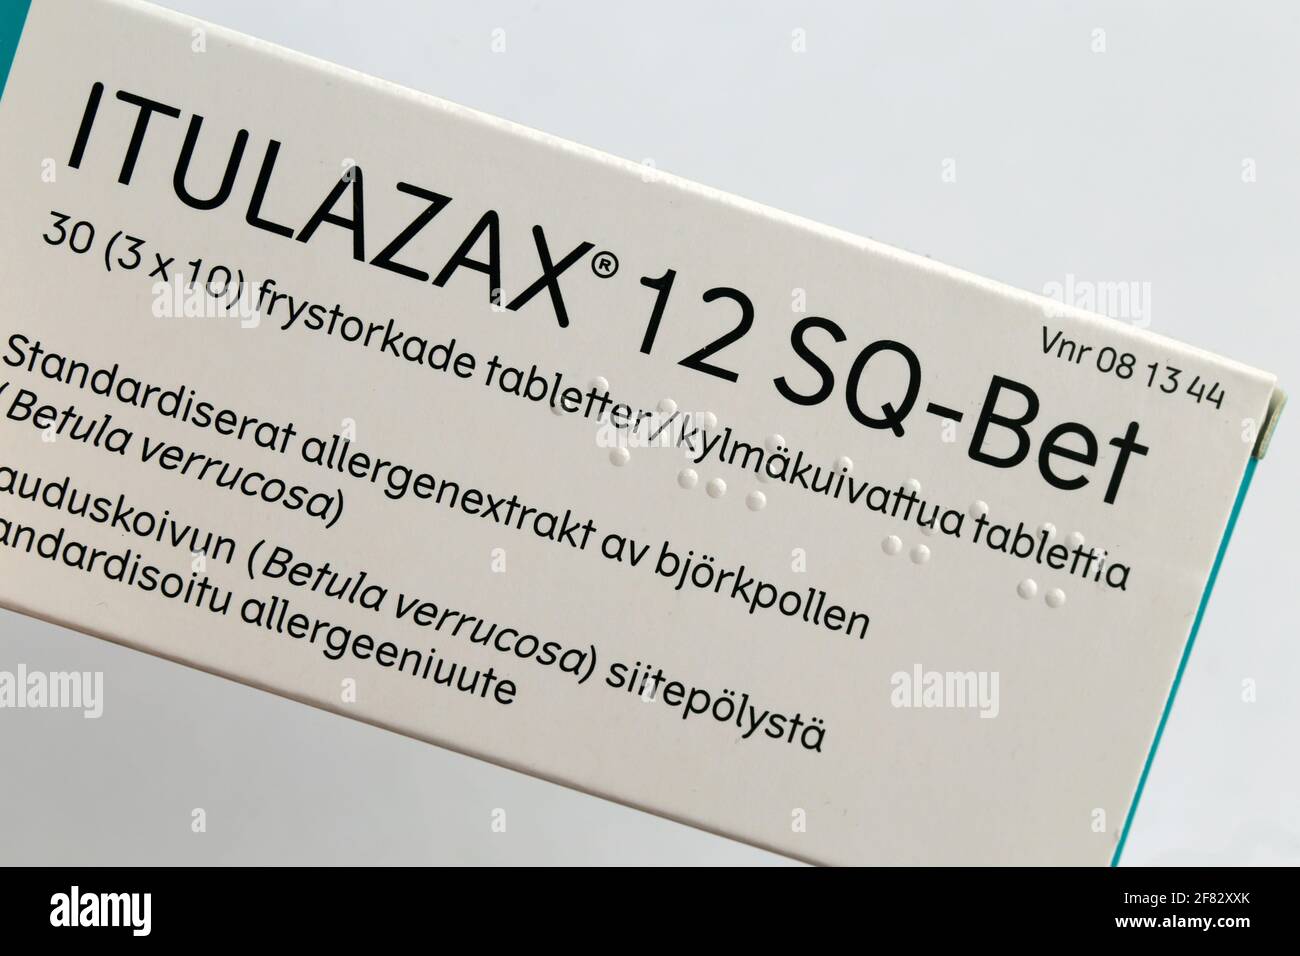 Compresse immunoterapiche per allergia sublinguale (SLIT) dell'albero di Itulazax utilizzate per desensibilizzare le allergie alla betulla e al polline dell'albero. Apr 2020, Espoo, Finlandia. Foto Stock